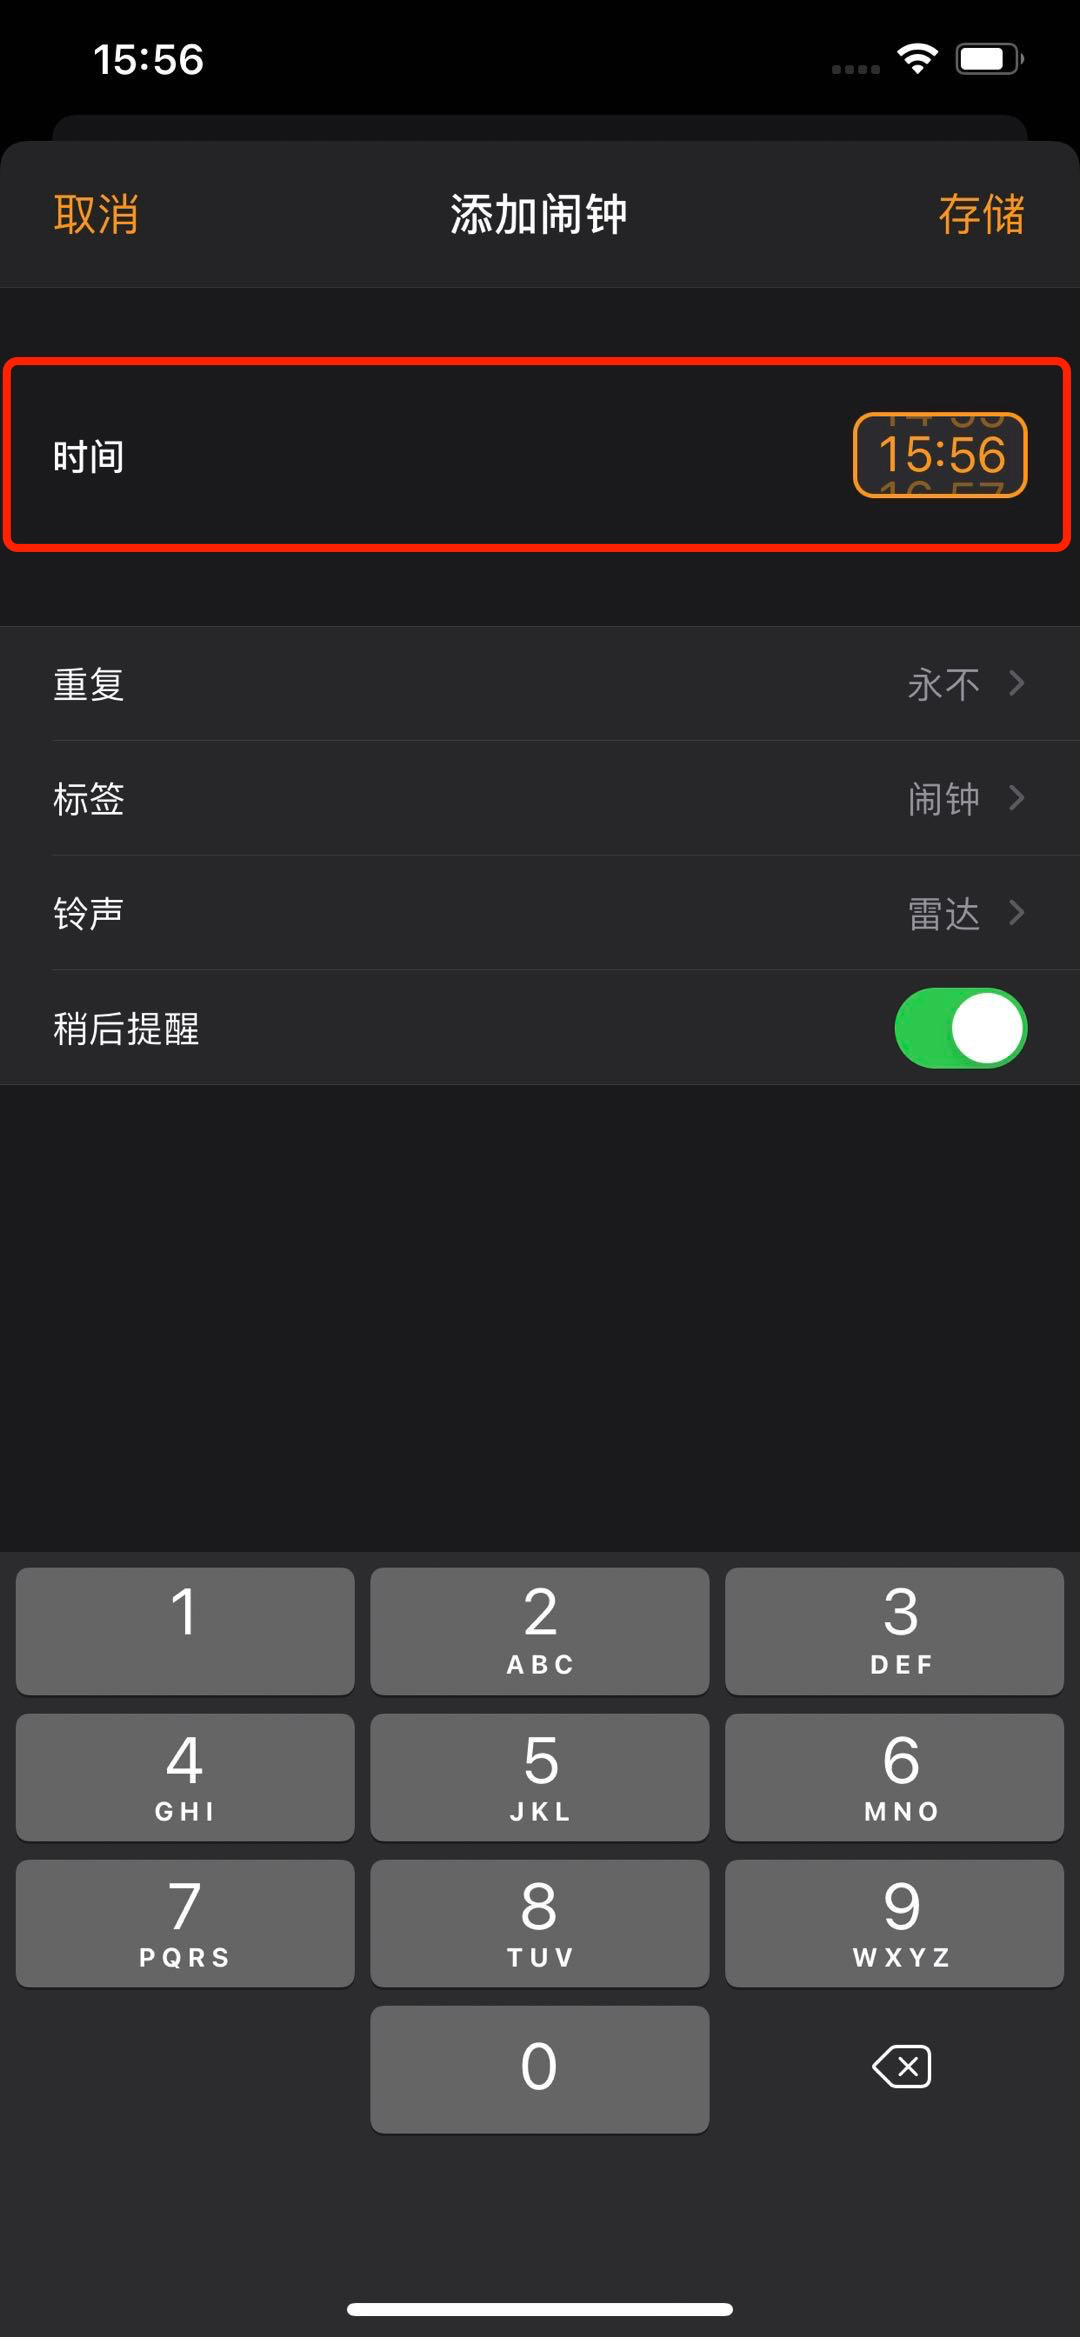 iOS14 Beta6 ռƵʽߣ